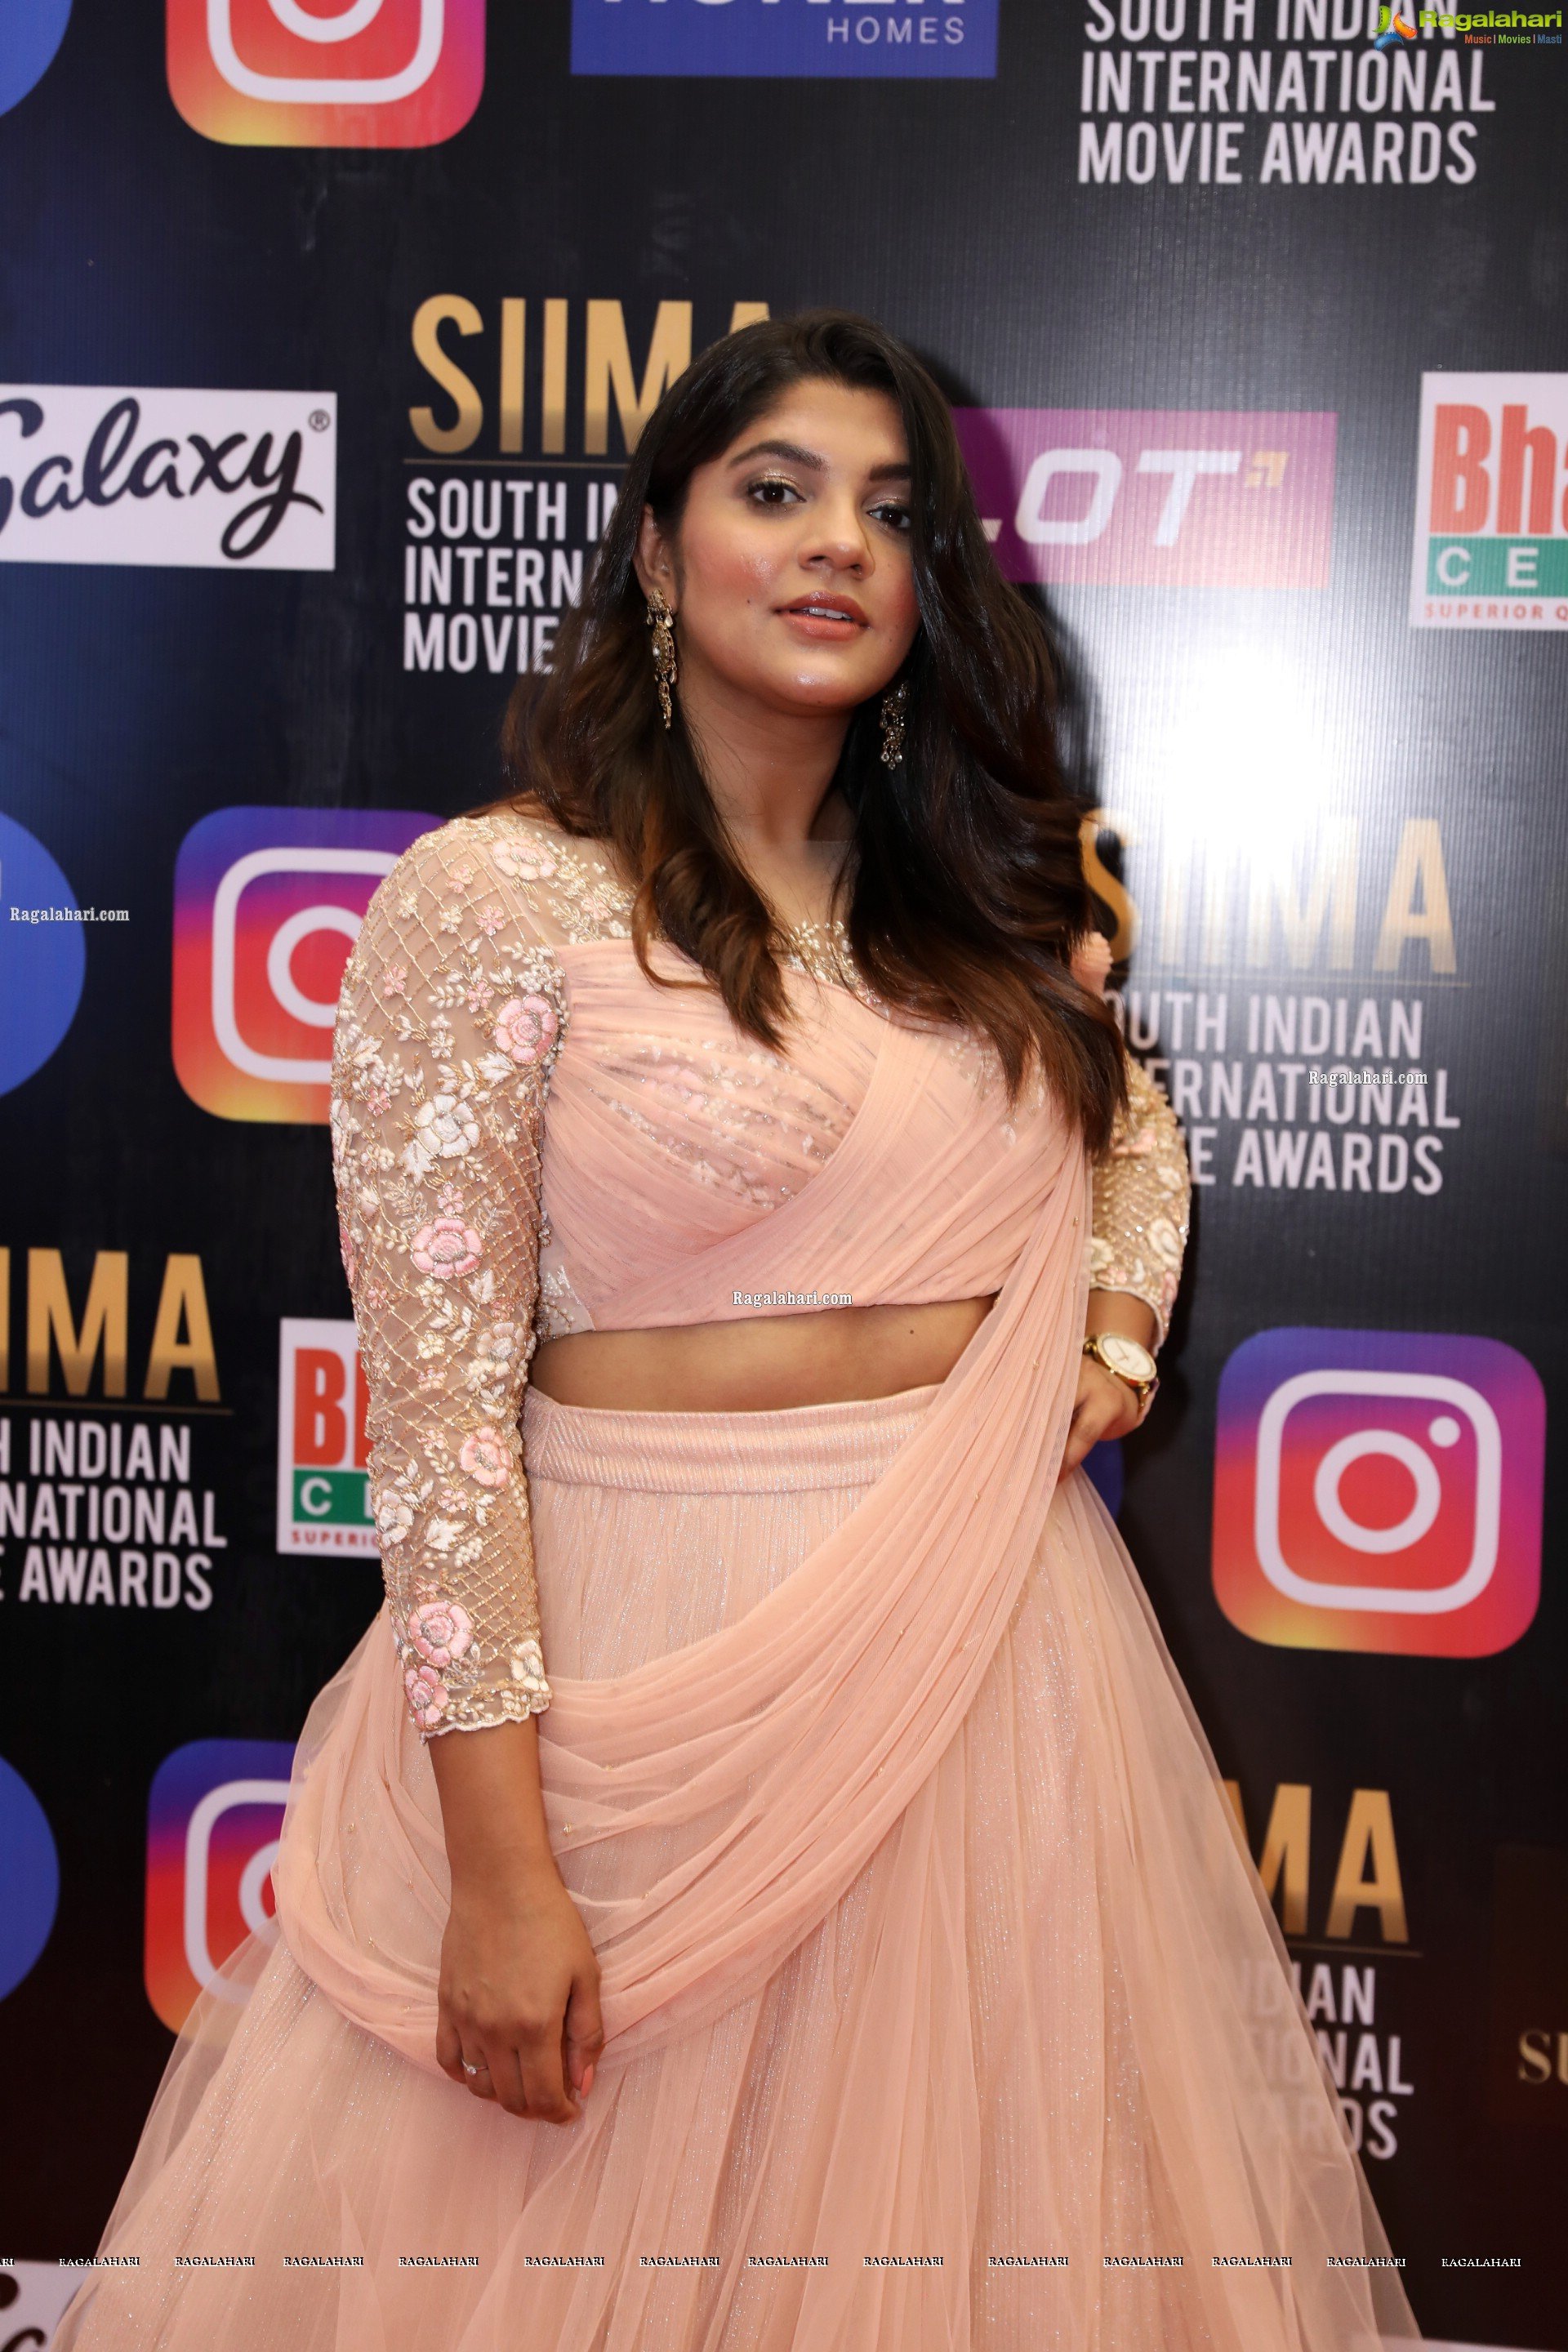 Aparna Balamurali at SIIMA Awards 2021 Day 2, HD Photo Gallery